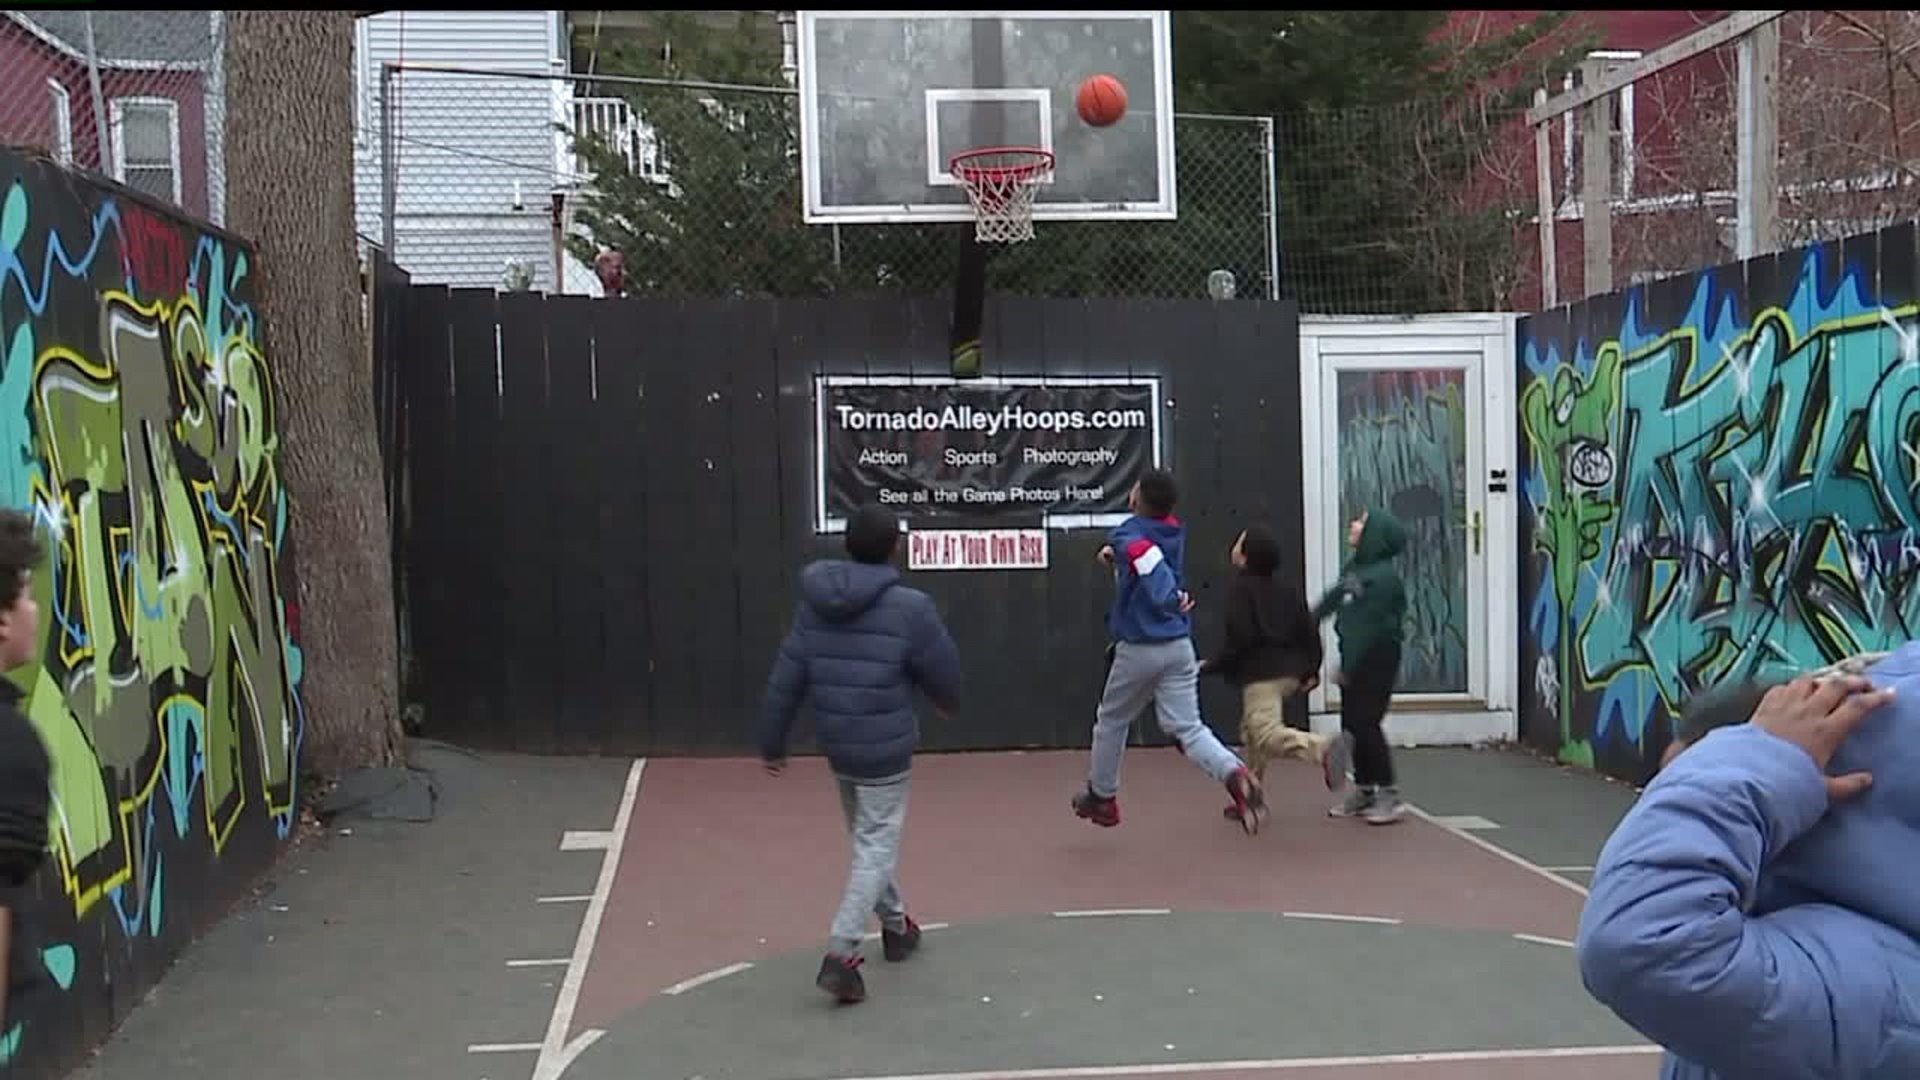 Lancaster backyard basketball court needs an assist from community